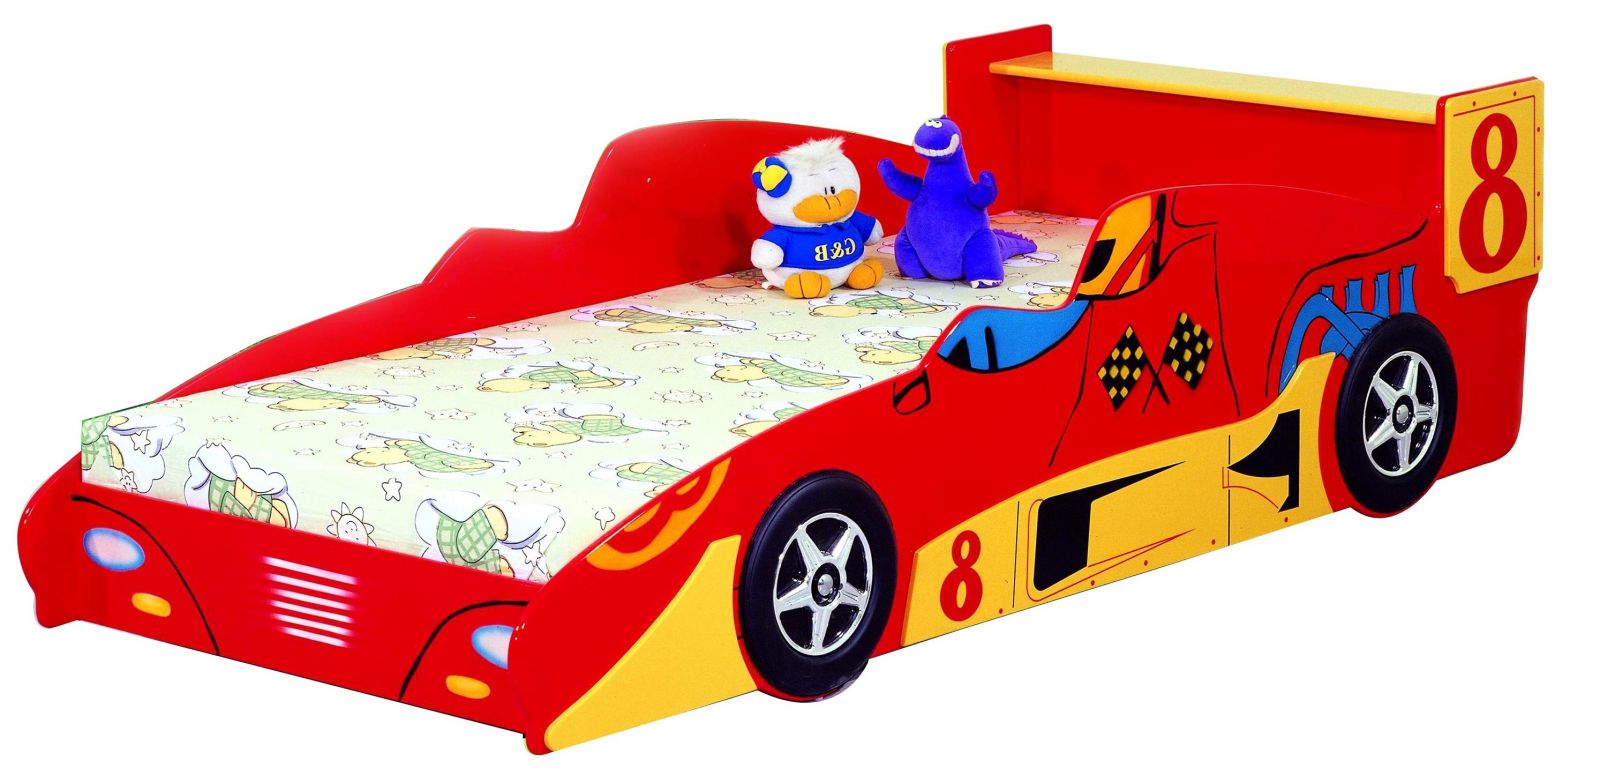 Детская кровать машина, кровать Гоночная машина Формула 1 - Racing Car F1, артикул 350, фирма Lotus Car bed, кровать для ребенка в возрасте от 3-х до 16 лет, кровать машина от 3 лет с бортиками, МДФ, цвет красный